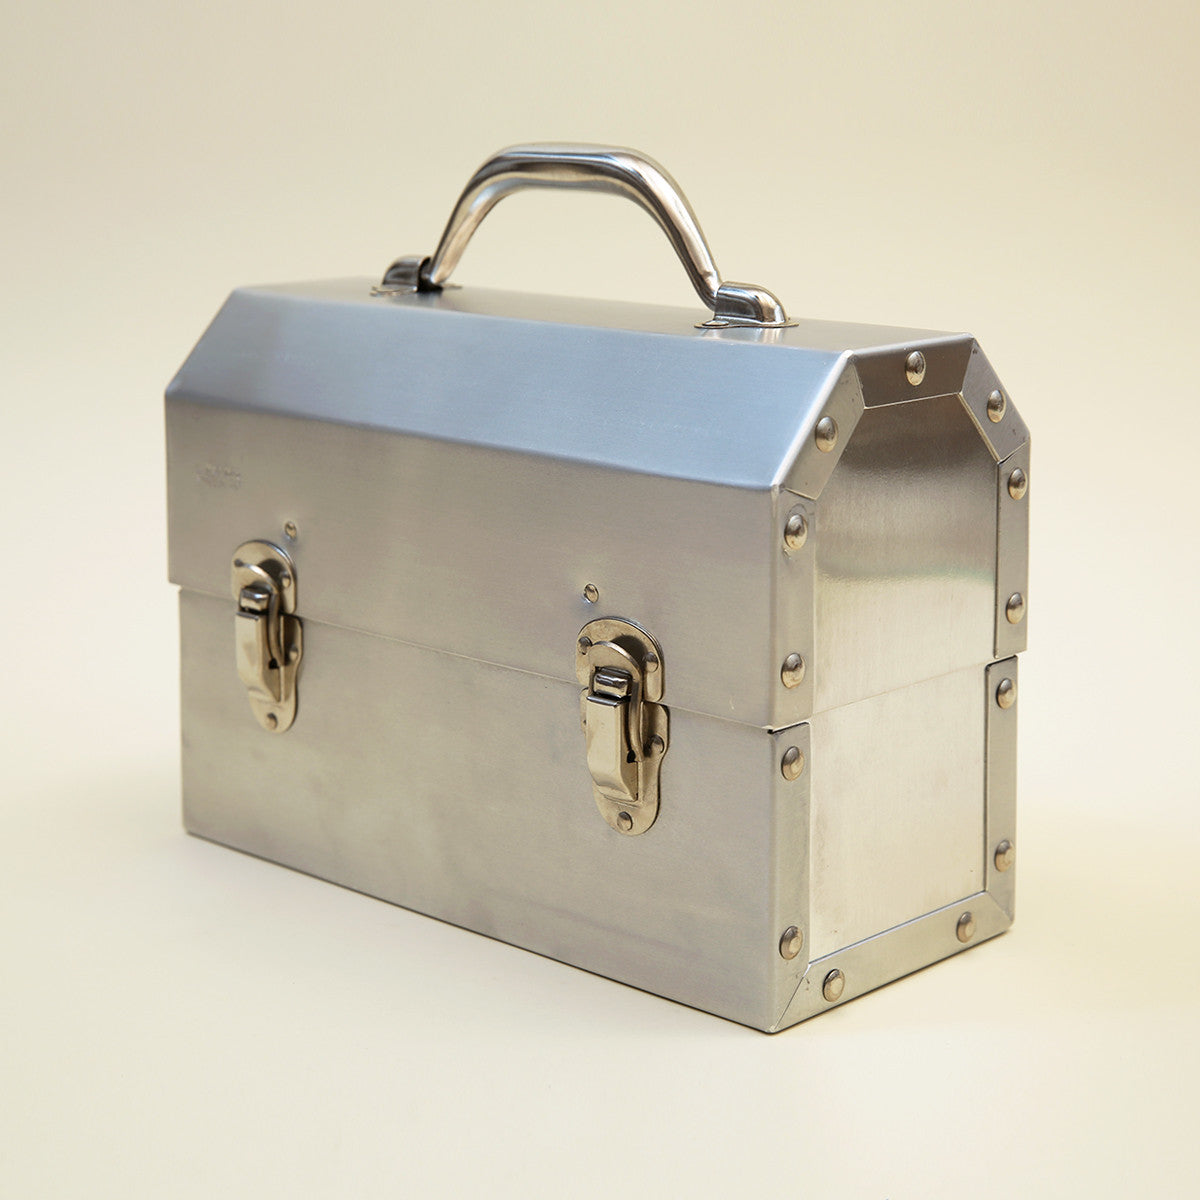 Aluminum Bento Box